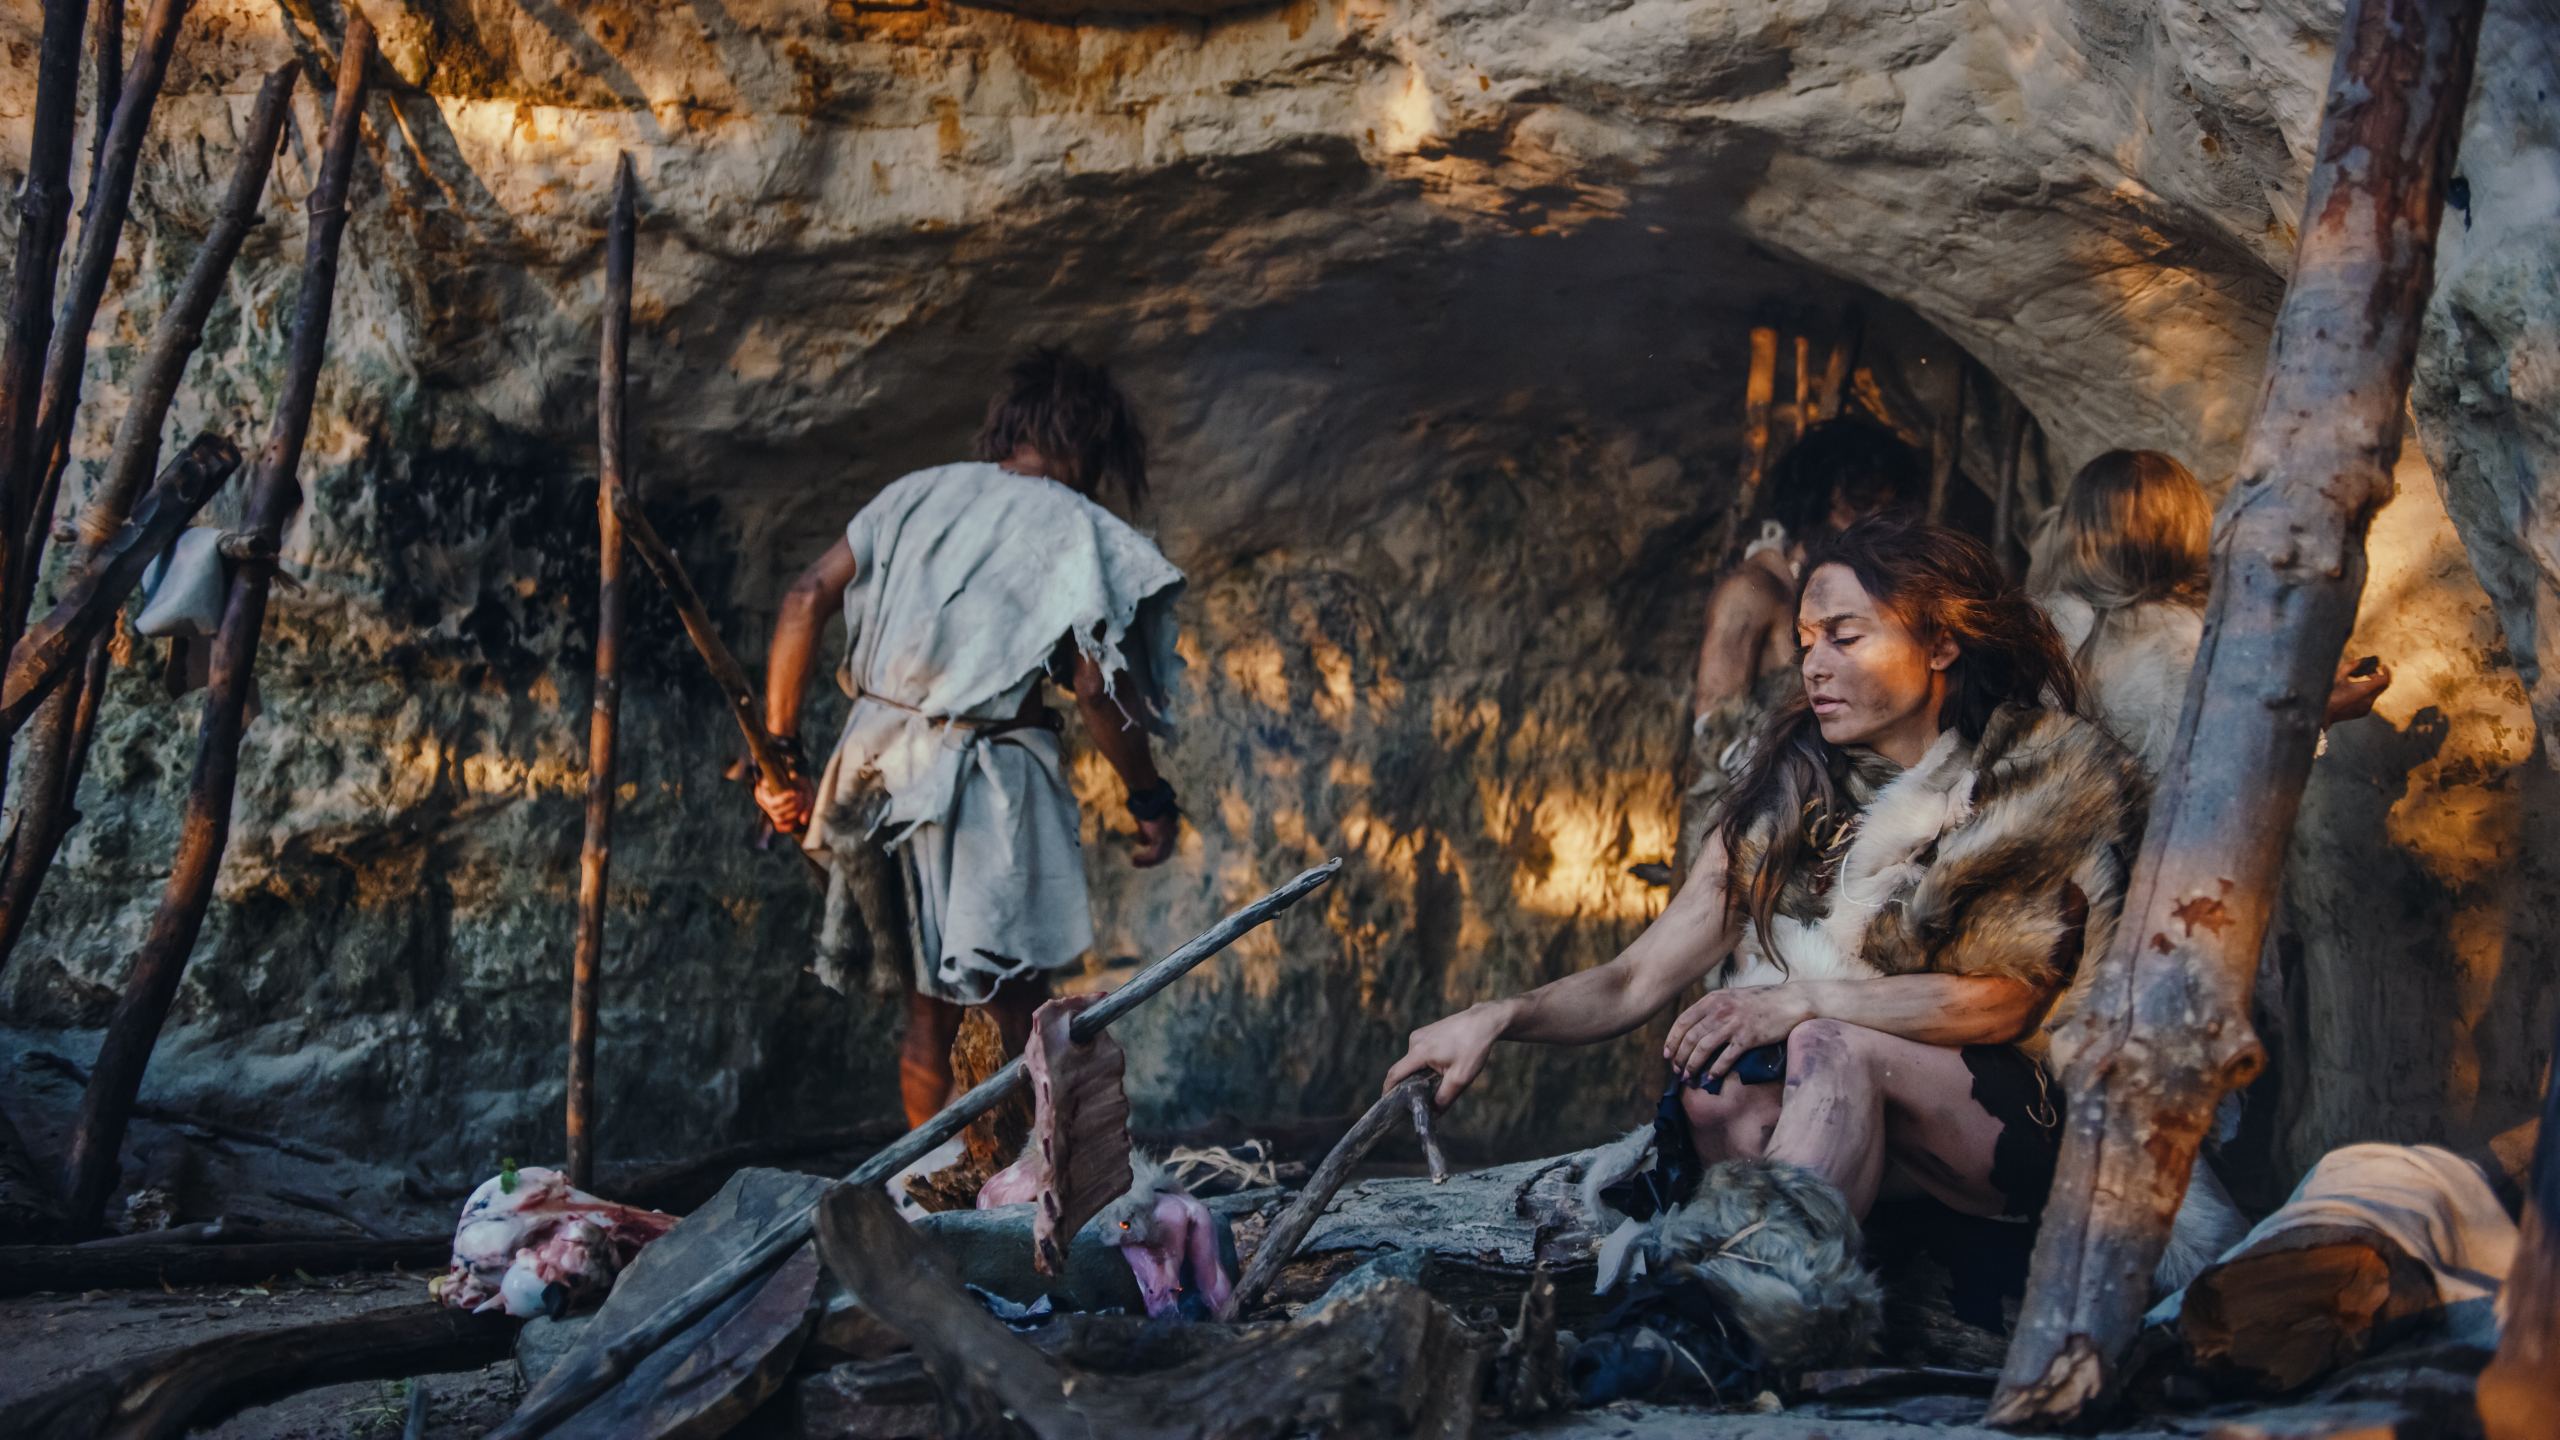 Рекреационное изображение семьи неандертальцев Homo Sapiens. Племя охотников-собирателей, носящих шкуры животных, живет в пещере. Лидер приносит добычу с охоты, женщина готовит еду на костре, девушка рисует на стенах, создавая искусство.